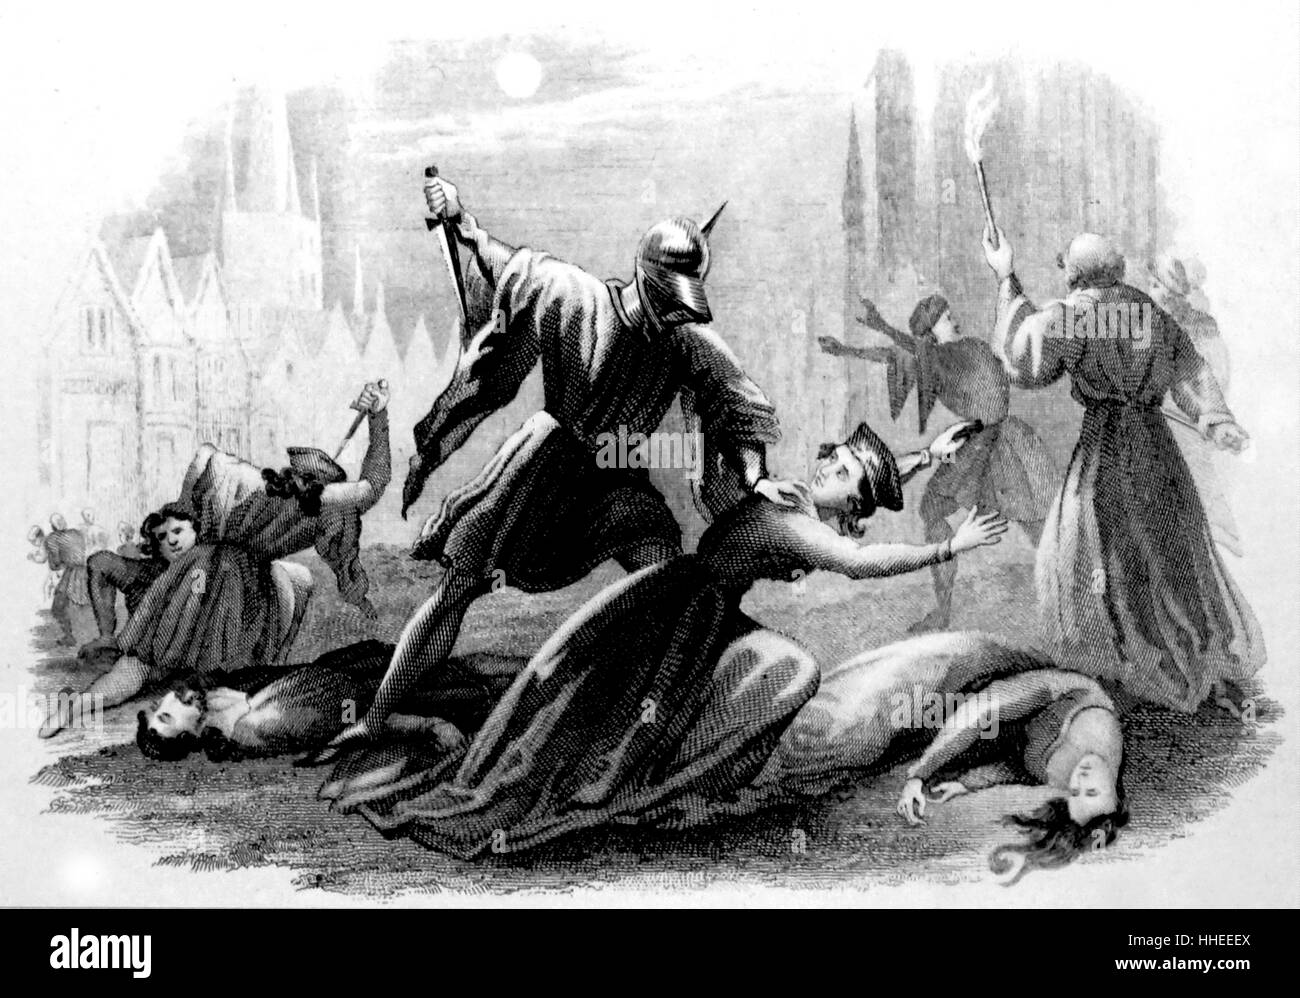 Scène du Massacre de la Saint-Barthélemy. un groupe ciblé d'assassinats et d'une vague de la violence populaire catholique, dirigé contre les Huguenots (protestants calvinistes français) pendant les Guerres de Religion. En date du 16e siècle Banque D'Images